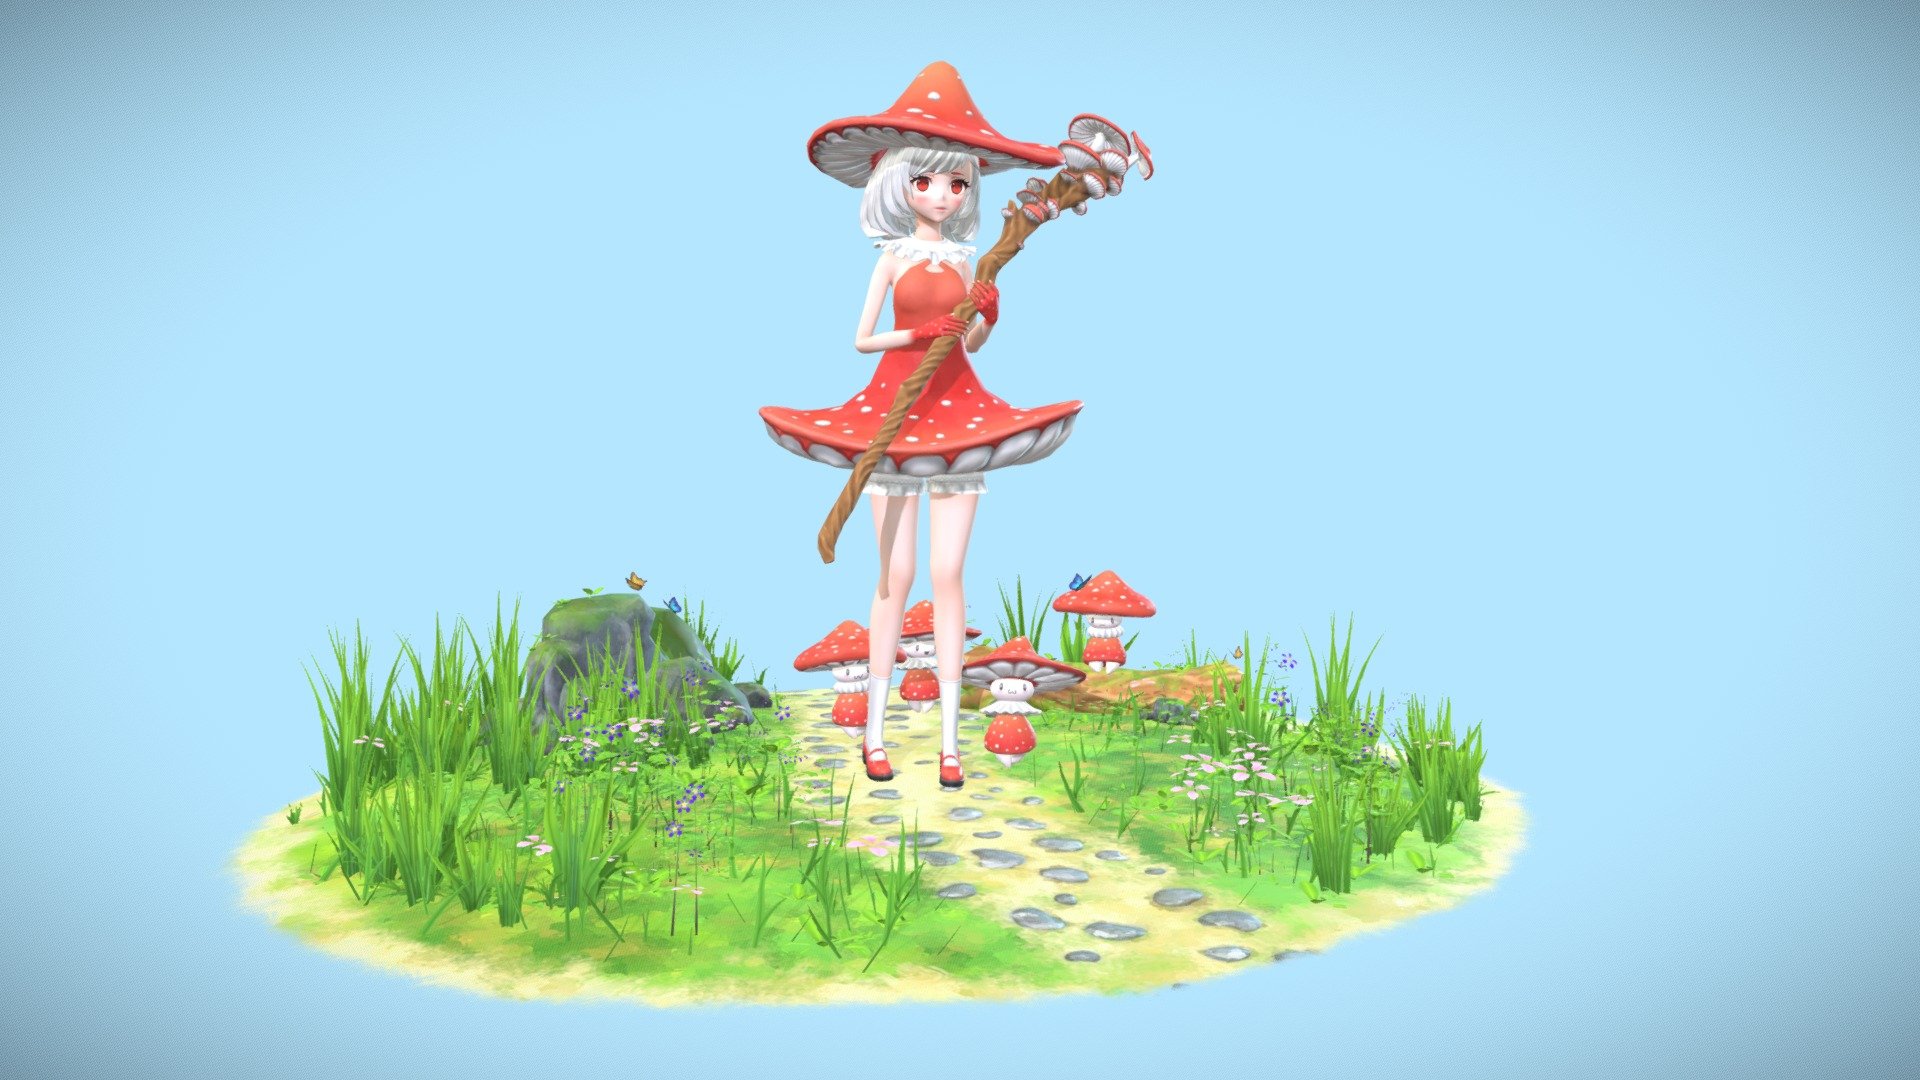 Mushroom Princess Asara 3d Model By Tem Tem55 B935b7f Sketchfab 